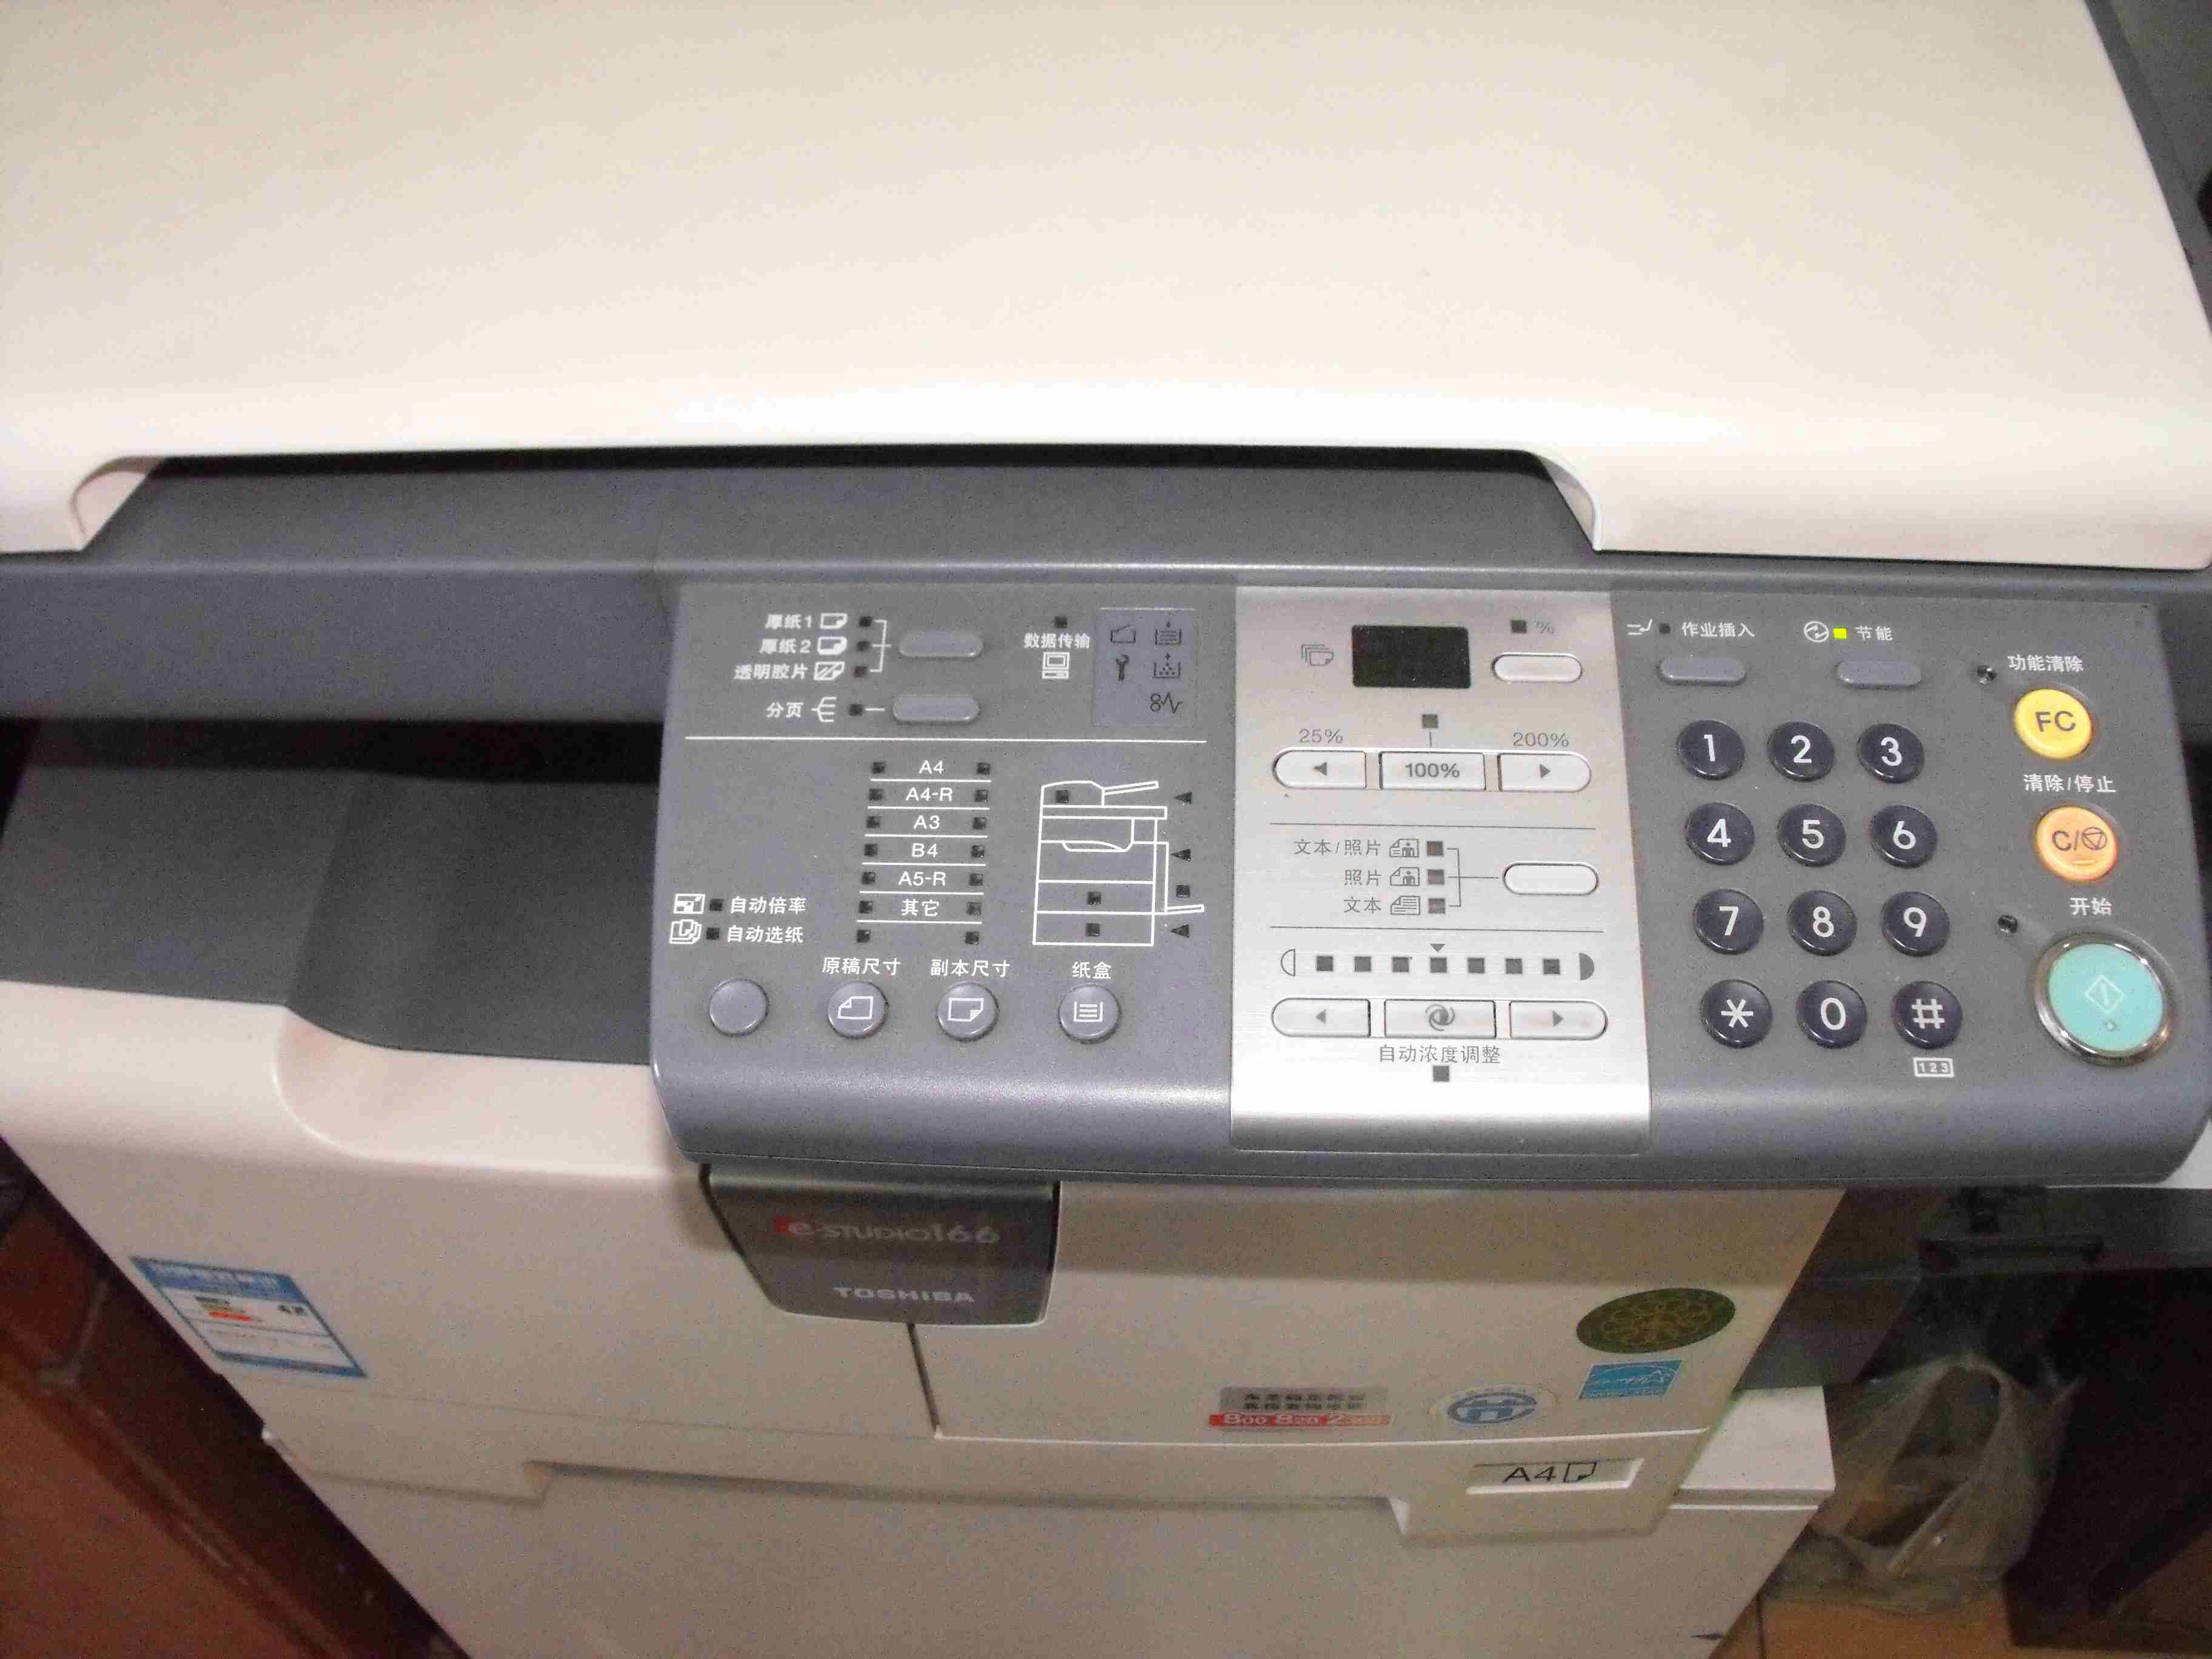 传真机怎么连接电脑当打印机用呢，急用？？